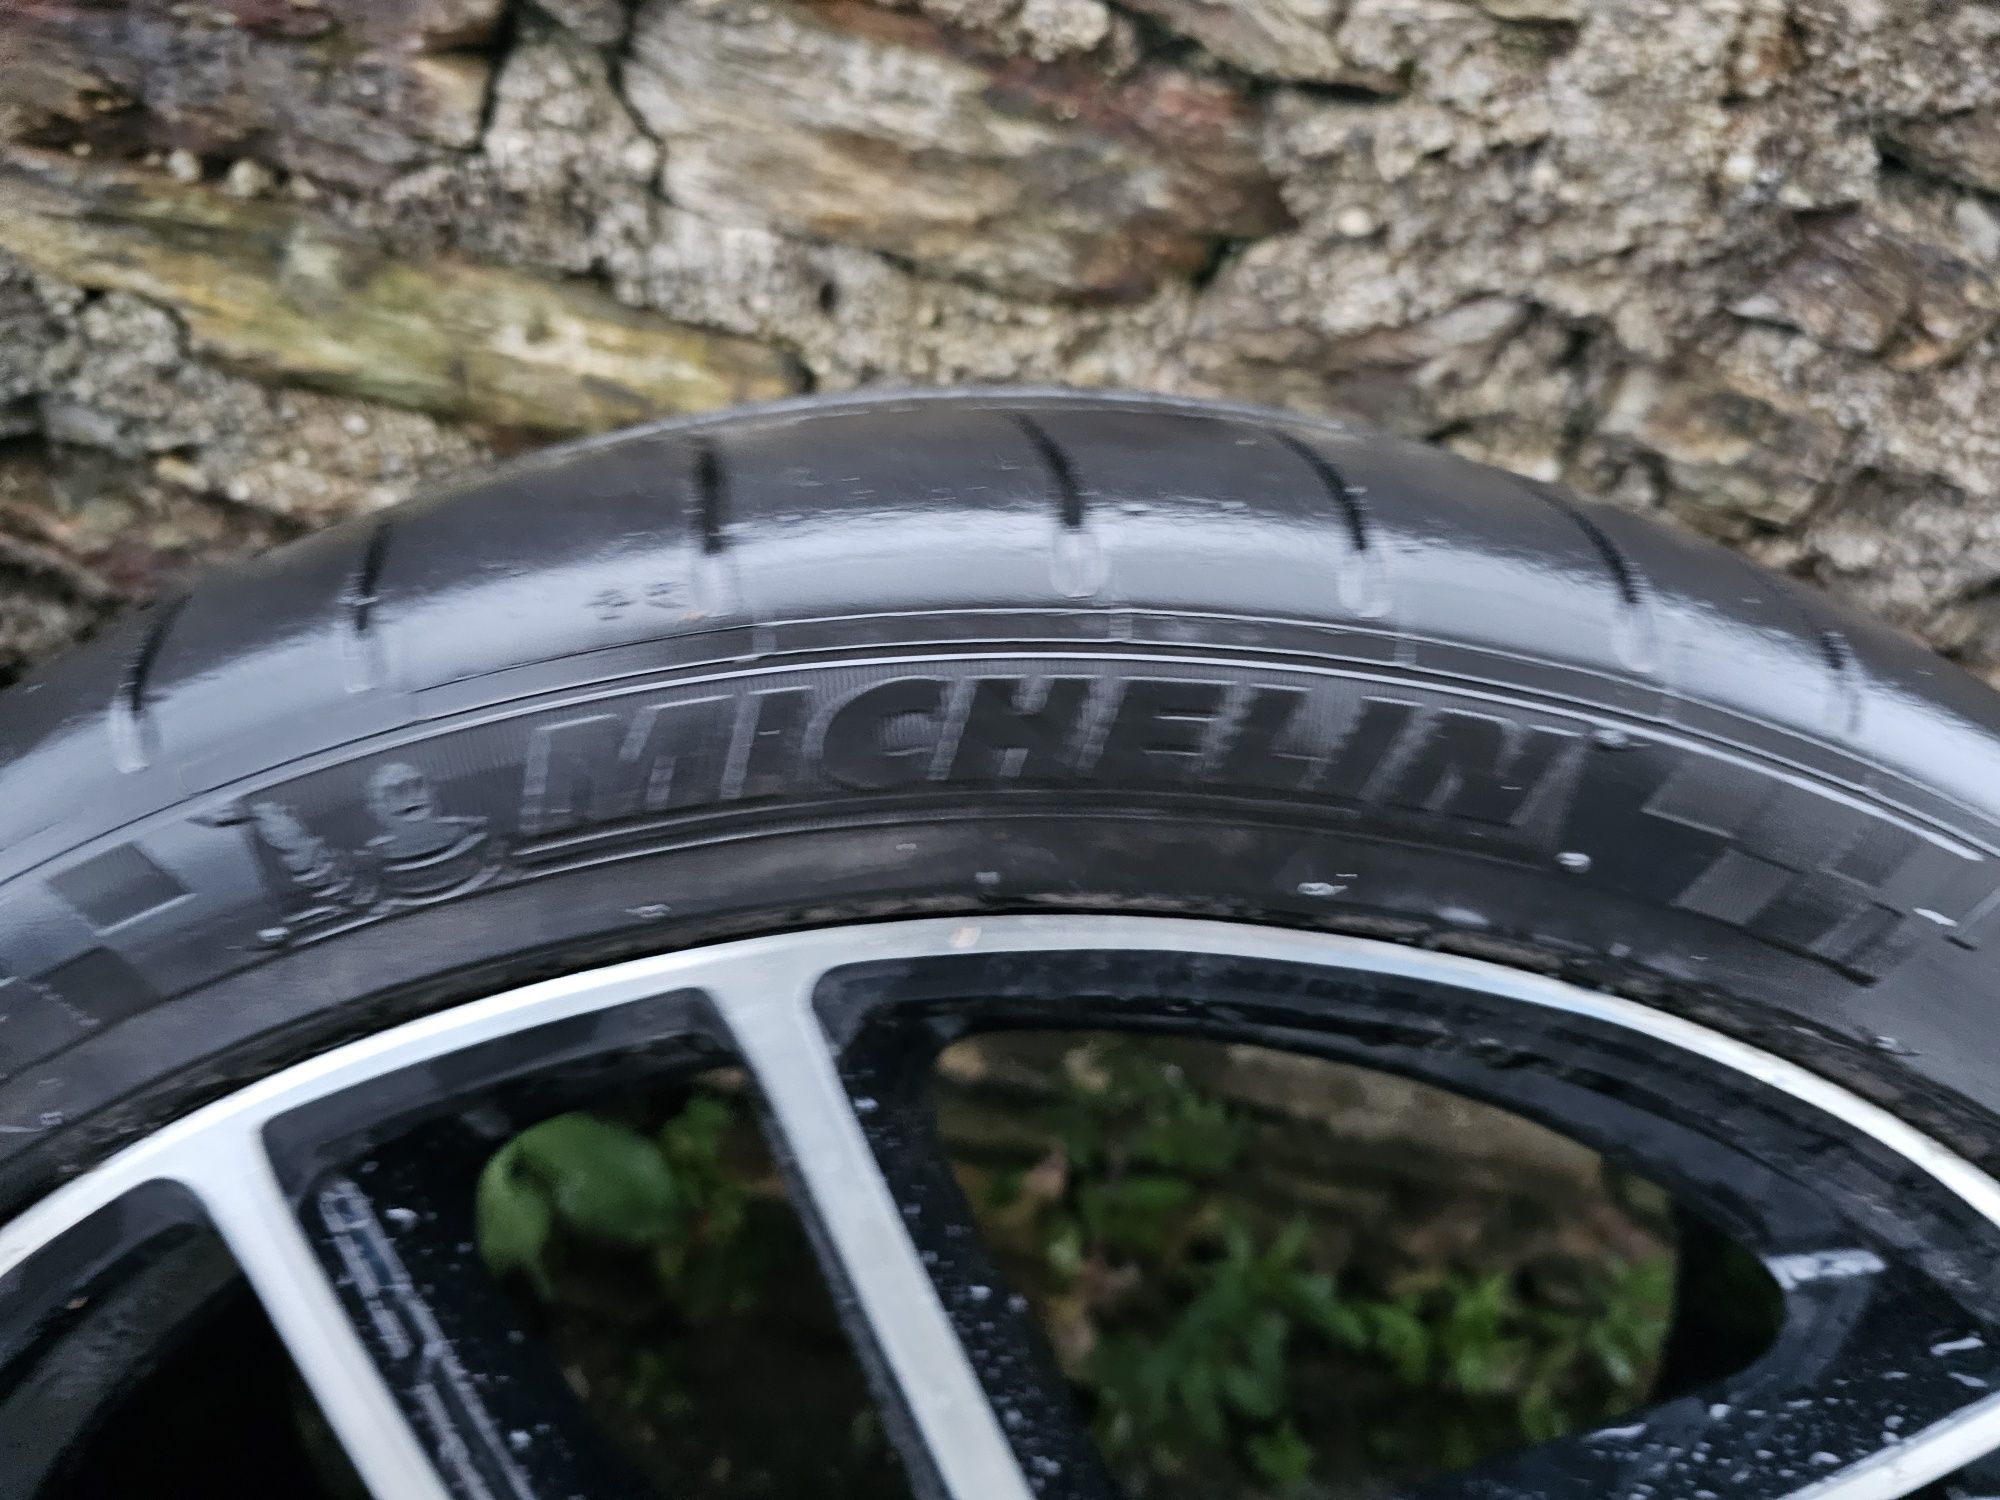 Jantes 20 5×120 BMW com pneus Michelin Pilot Sport
Possível envio para